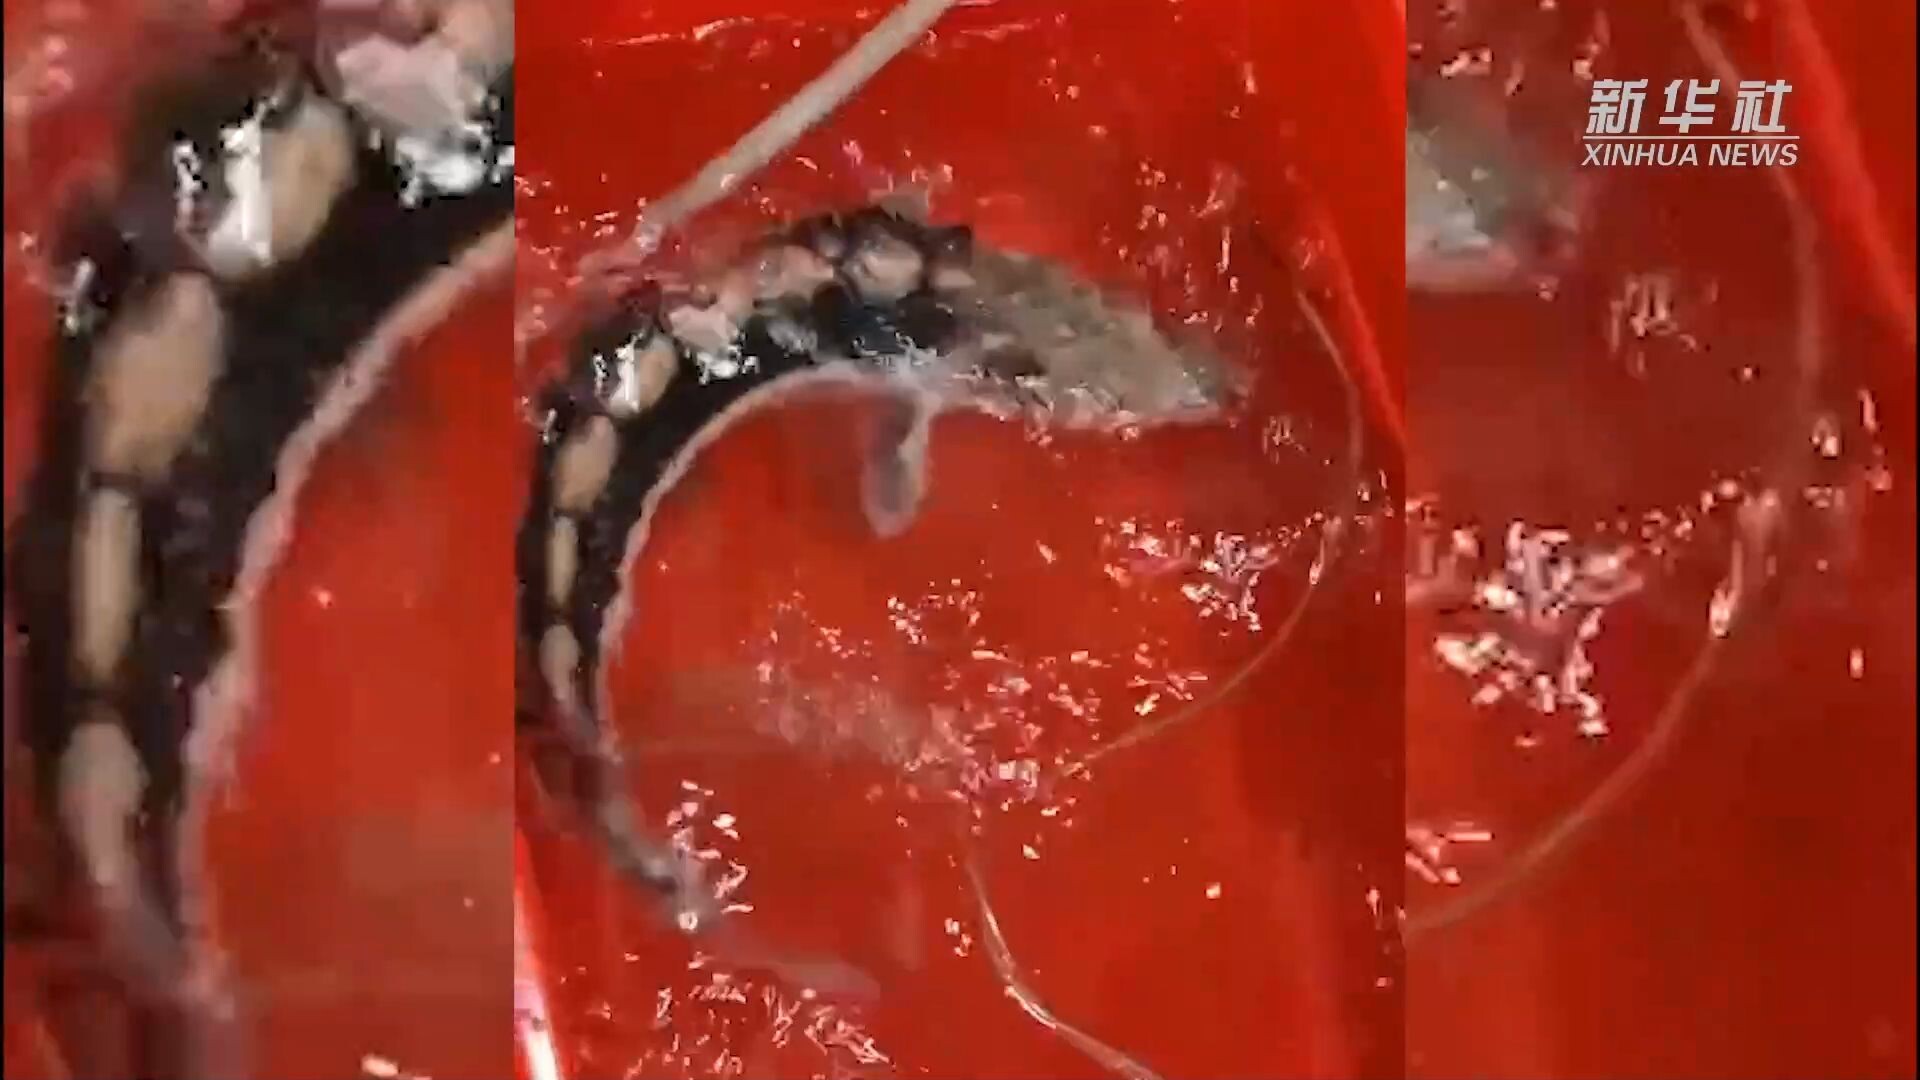 หูเป่ยช่วยชีวิต 'ปลาสเตอร์เจียนแยงซี' หายาก ตัวยาวกว่า 90 ซม.